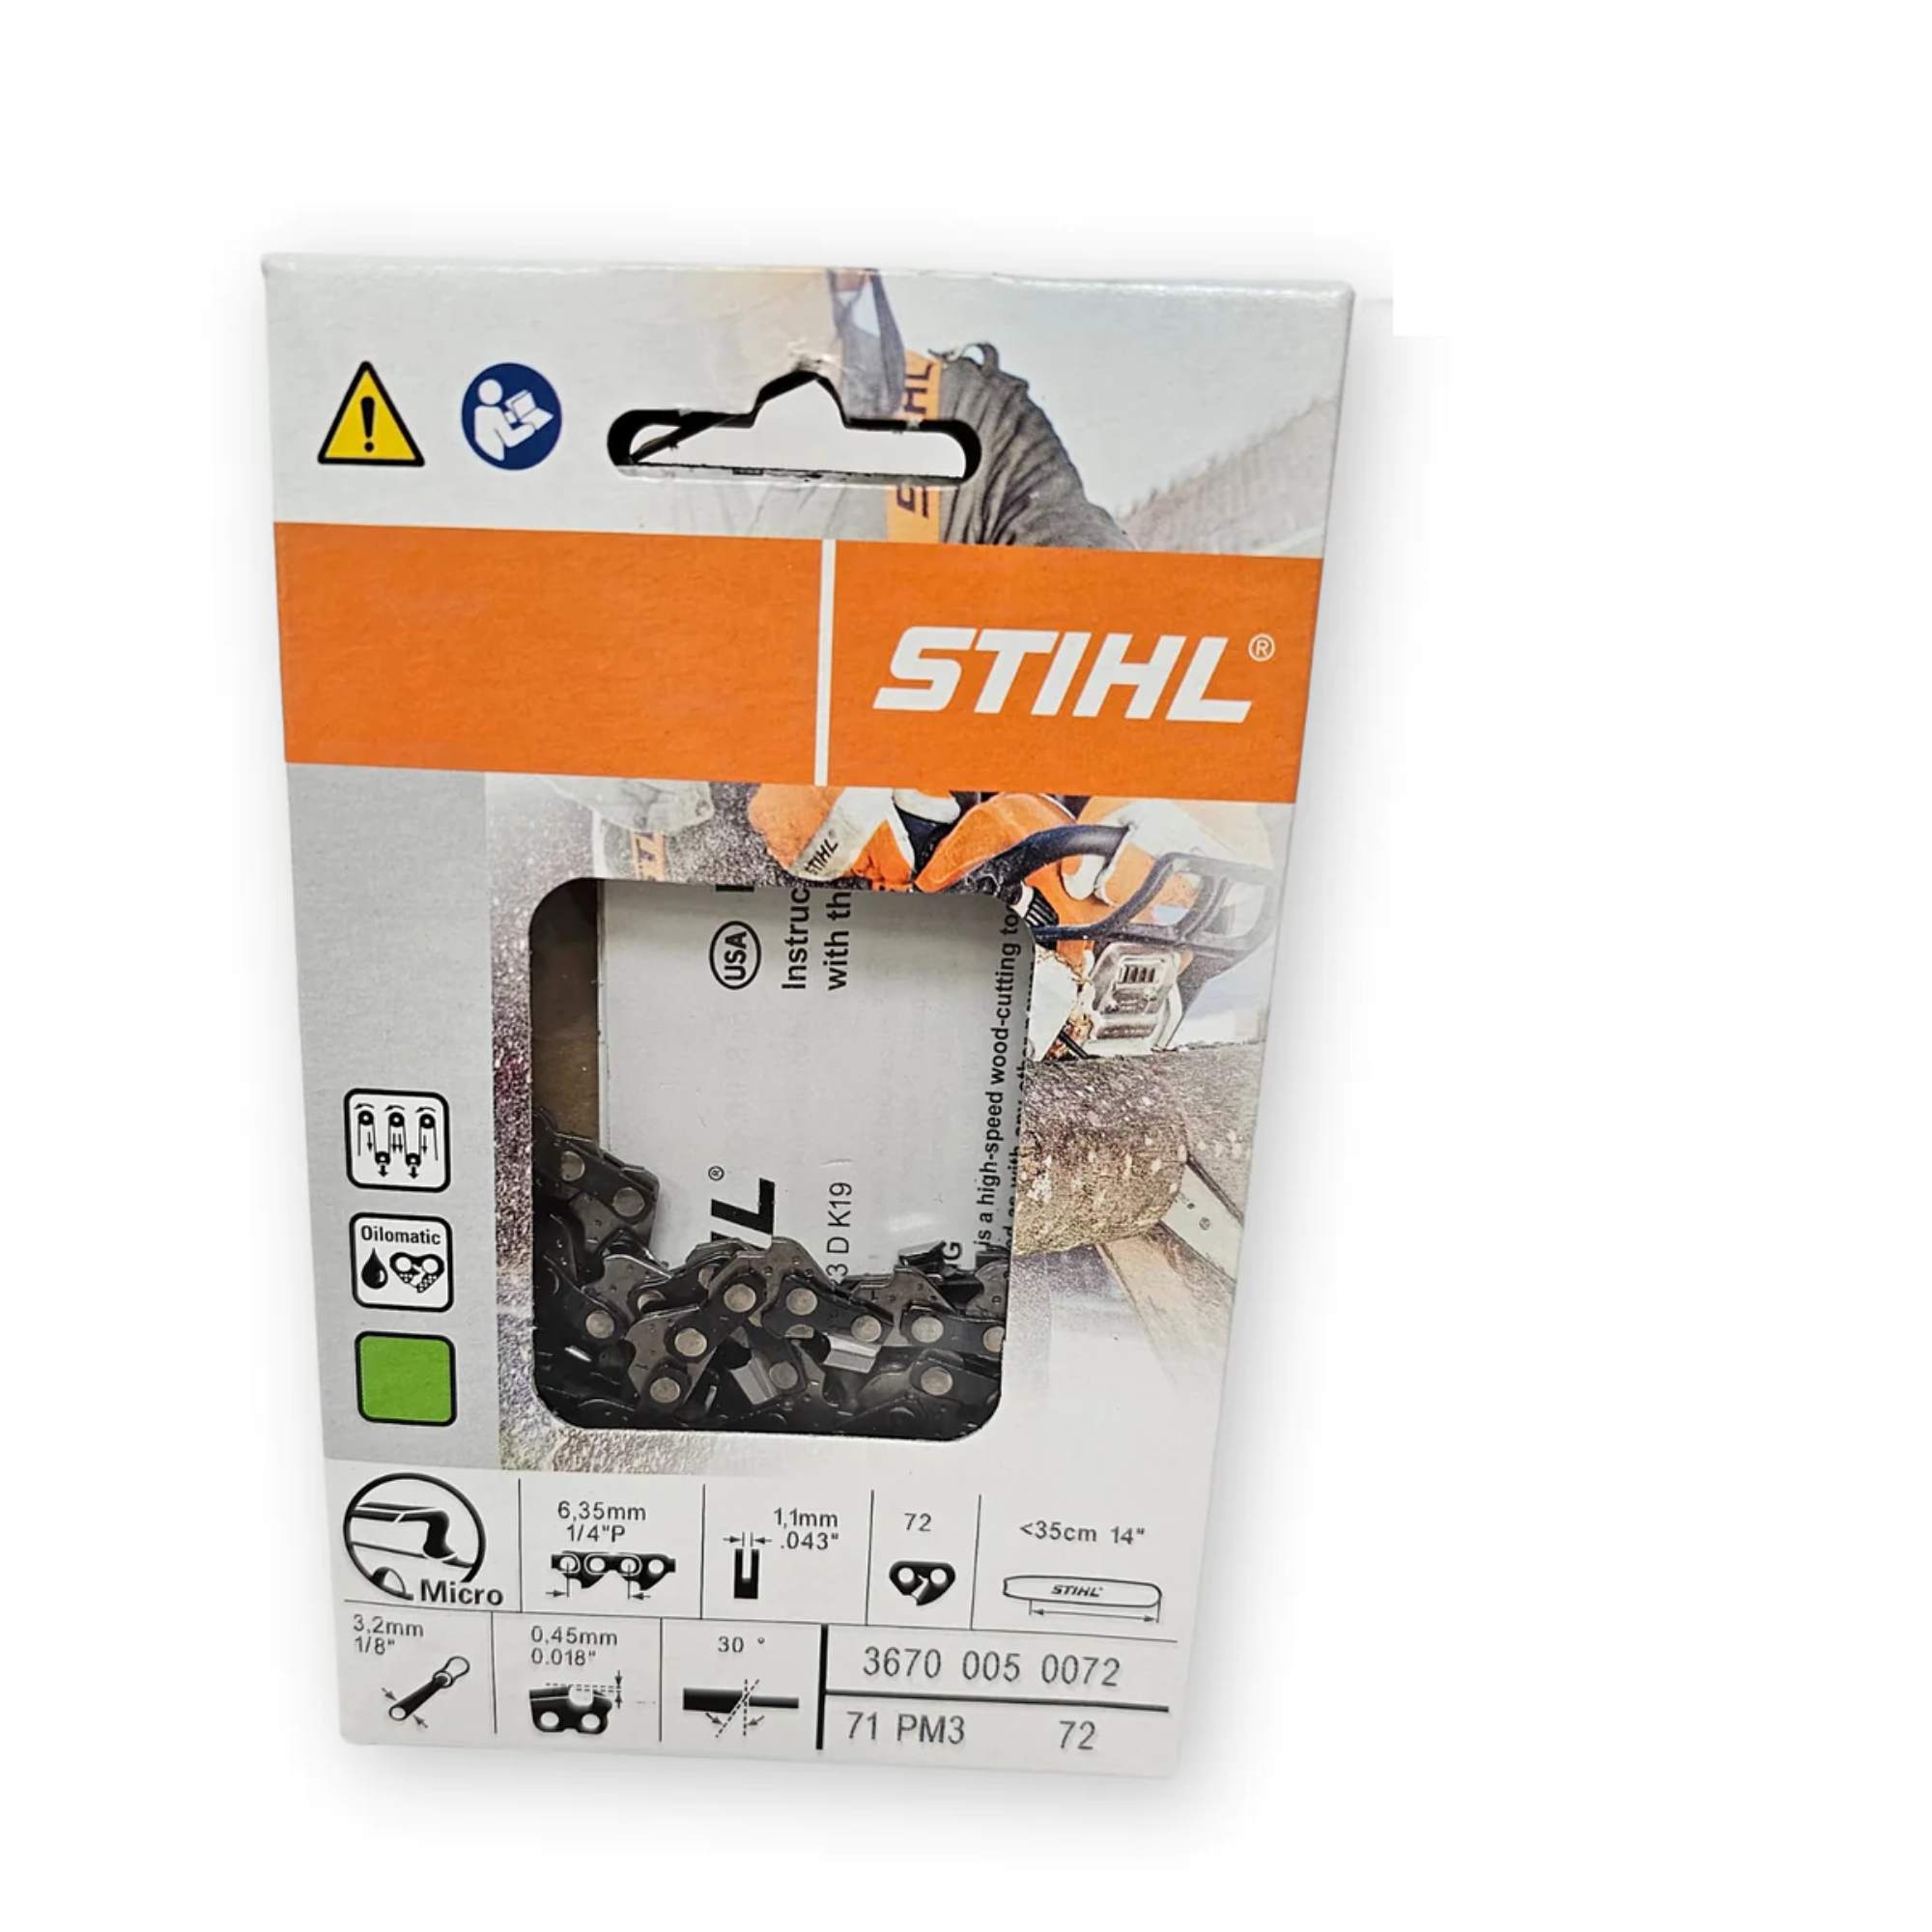 BULK || Stihl Oilomatic Picco Micro 3 | 71 PM3 72 | 14 in. | 72 Drive Links | Chainsaw Chain | 3670 005 0072